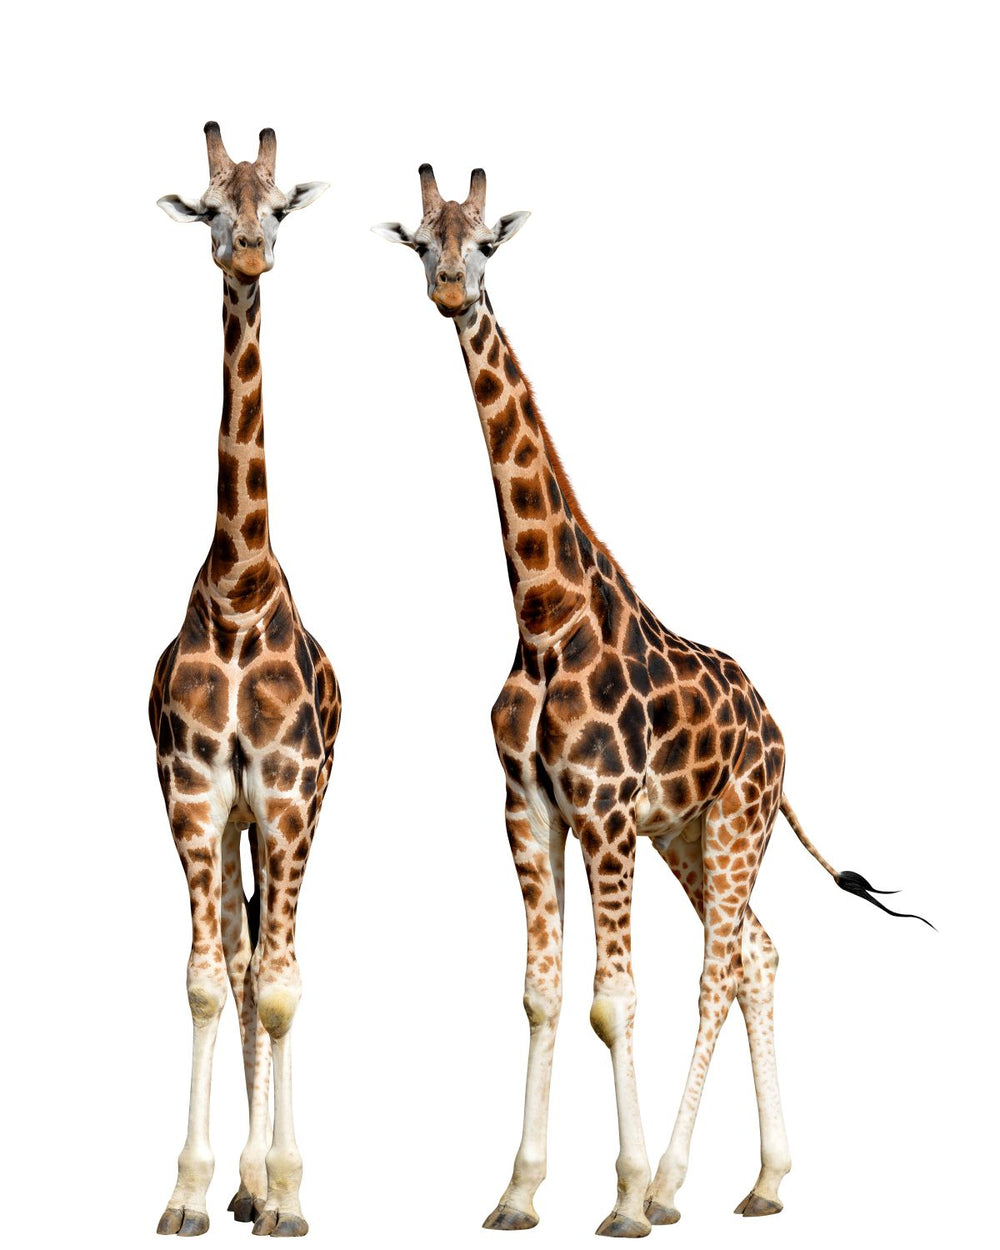 Two Tall Giraffes